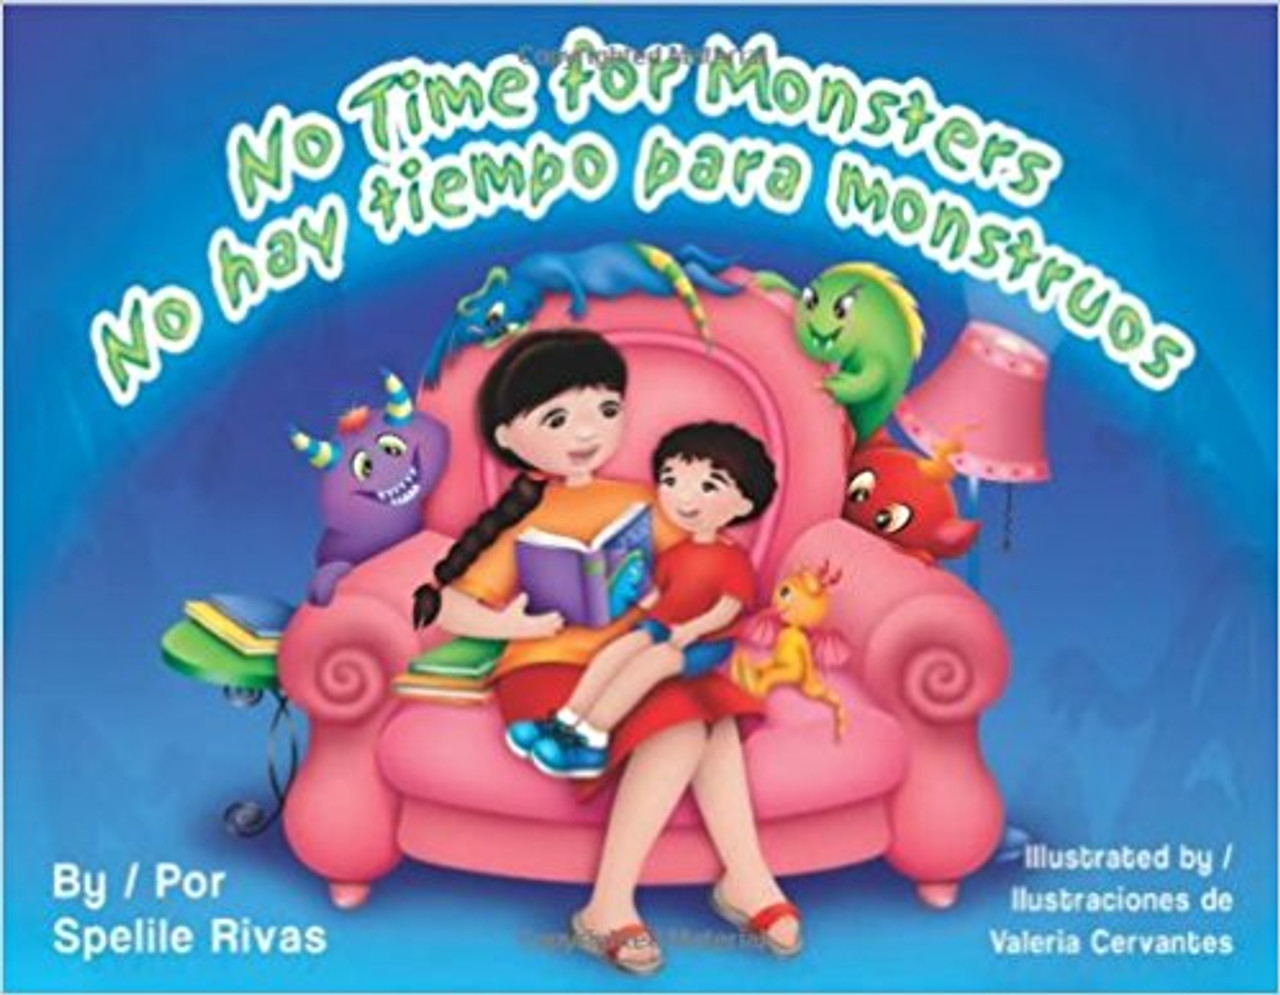 No Time for Monsters/ No hay tiempo para monstruos by Spelile Rivas 